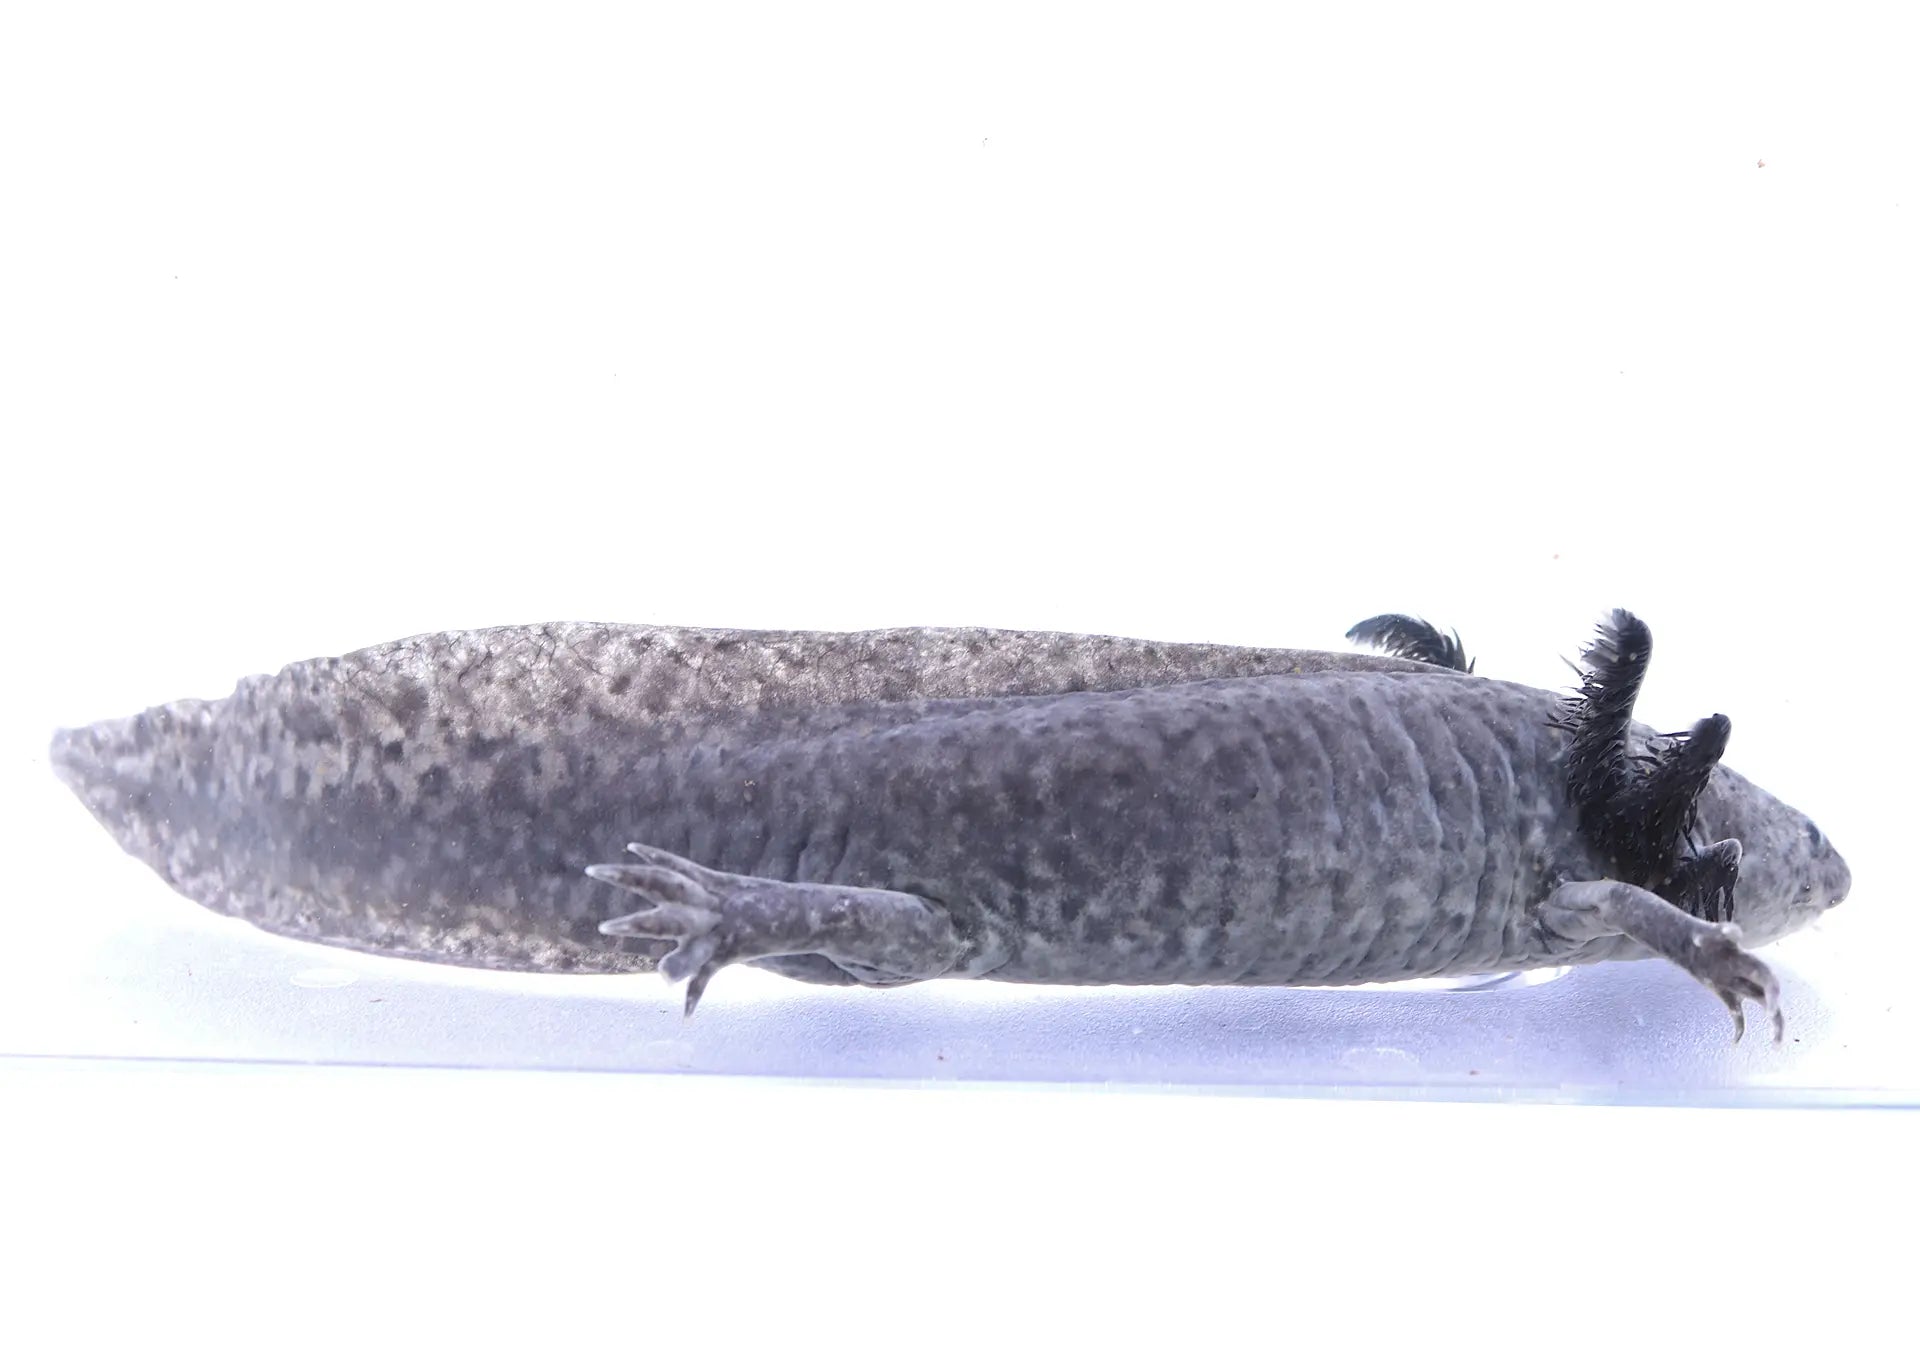 Axanthic Axolotl